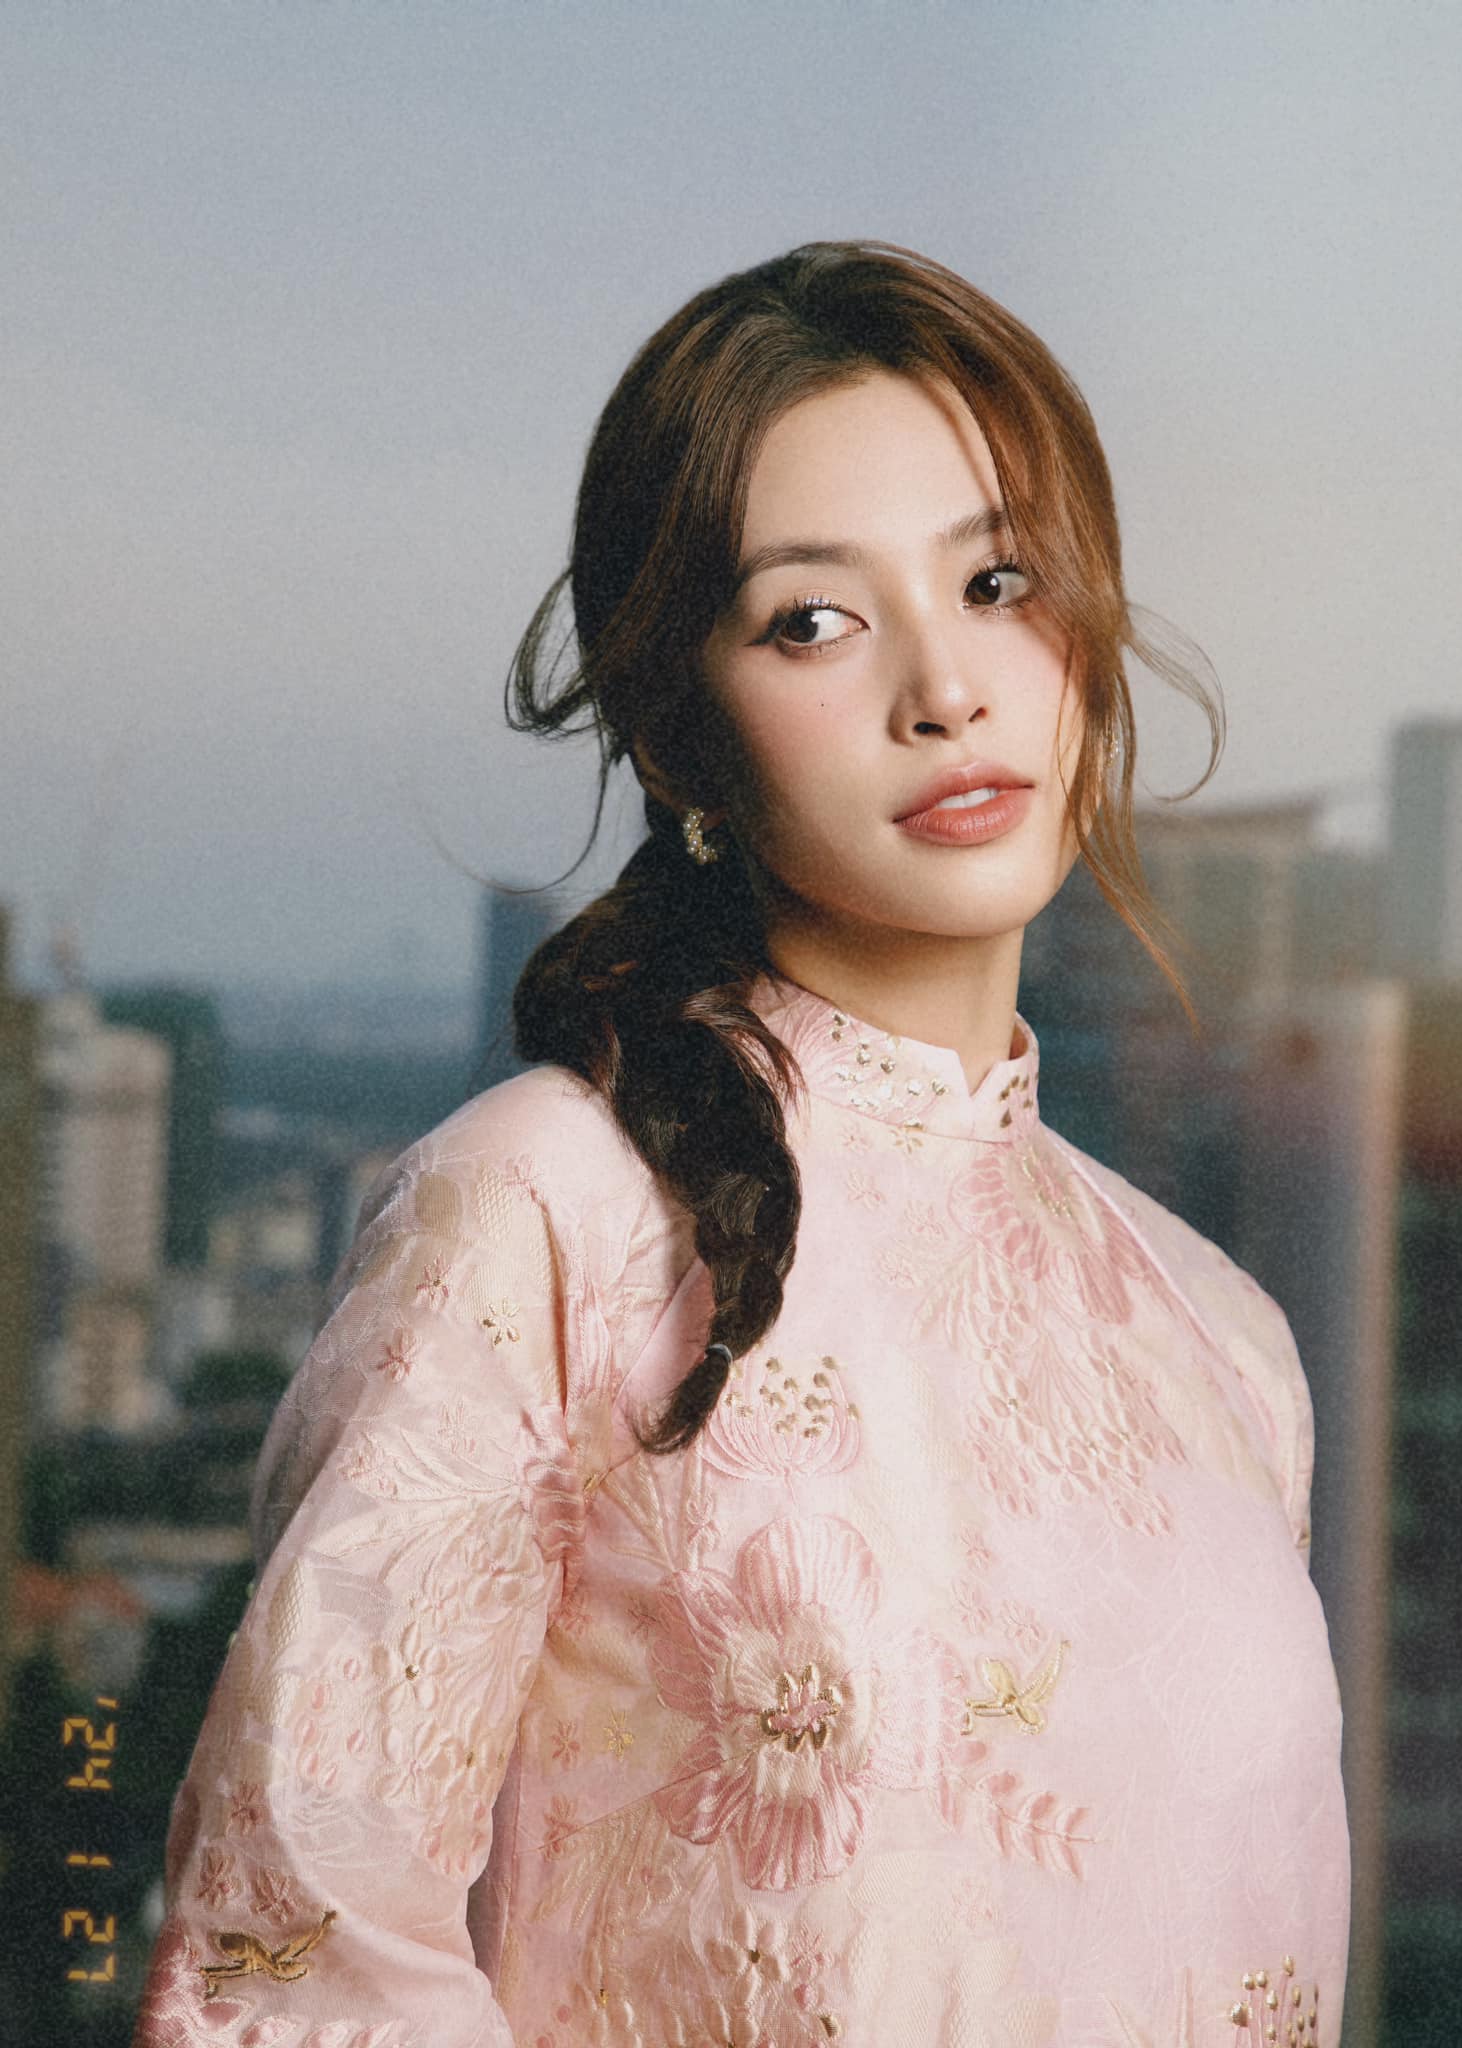 Hoa hậu Tiểu Vy sinh năm 2000 nổi tiếng trong showbiz Việt